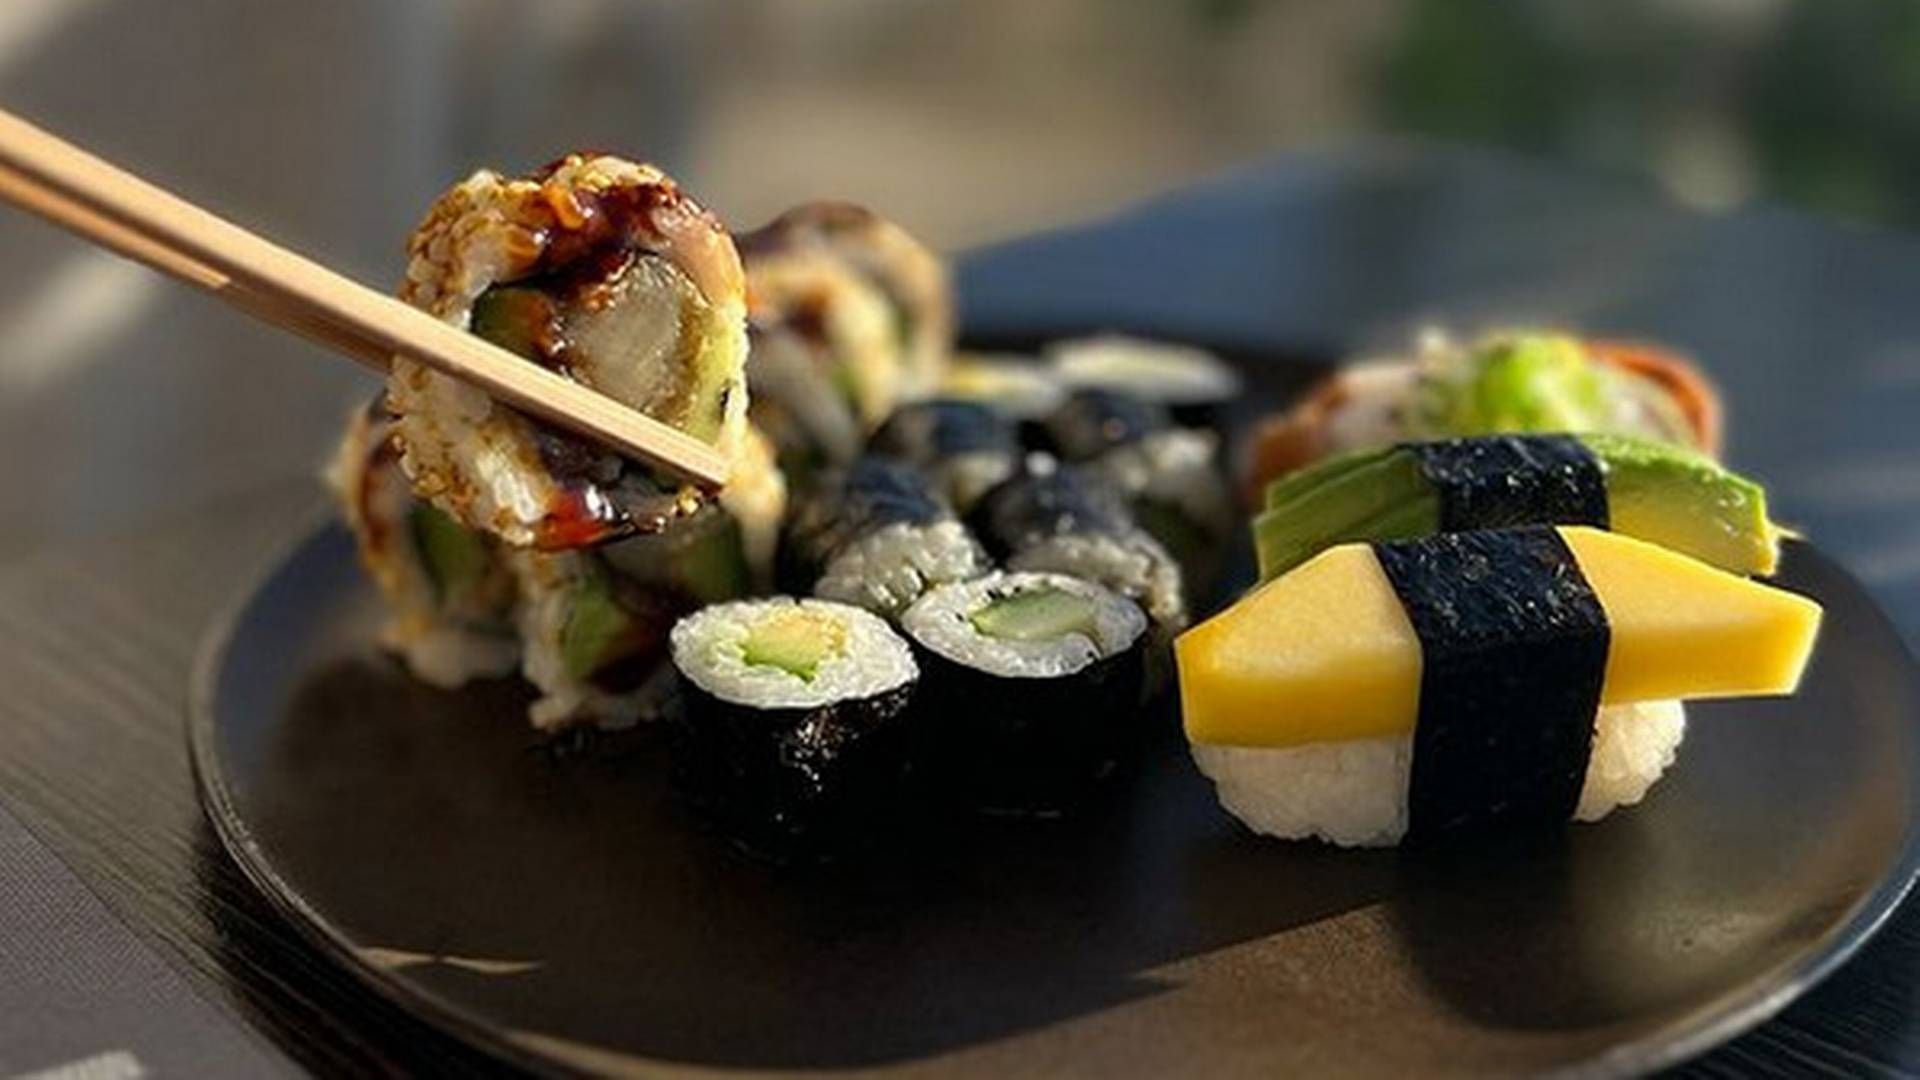 Letz Sushi-kæden kom ind på det danske marked i 2003 med et anderledes bud på sushi og fokus på takeaway, men er siden udviklet til spisesteder flere steder i landet. Tirsdag blev det meldt ud, at kæden lukker. | Foto: Pr / Letz Sushi